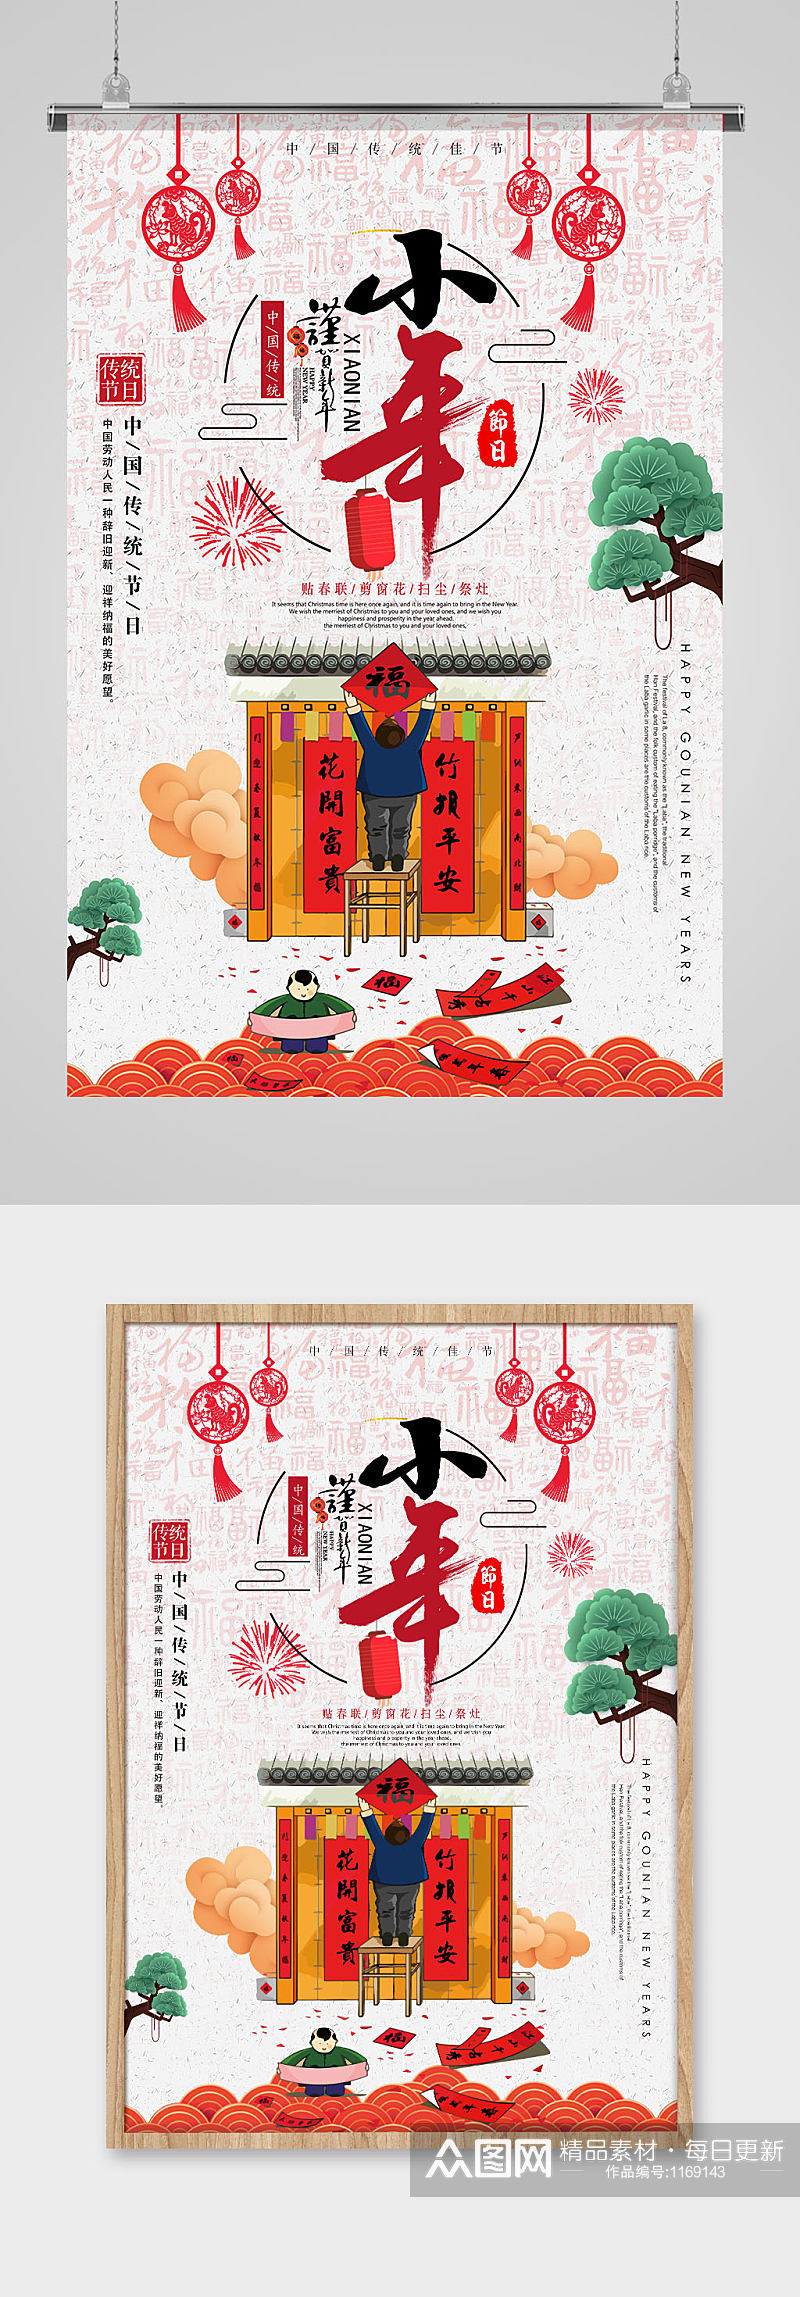 纯白色中国风插画小年节日海报素材